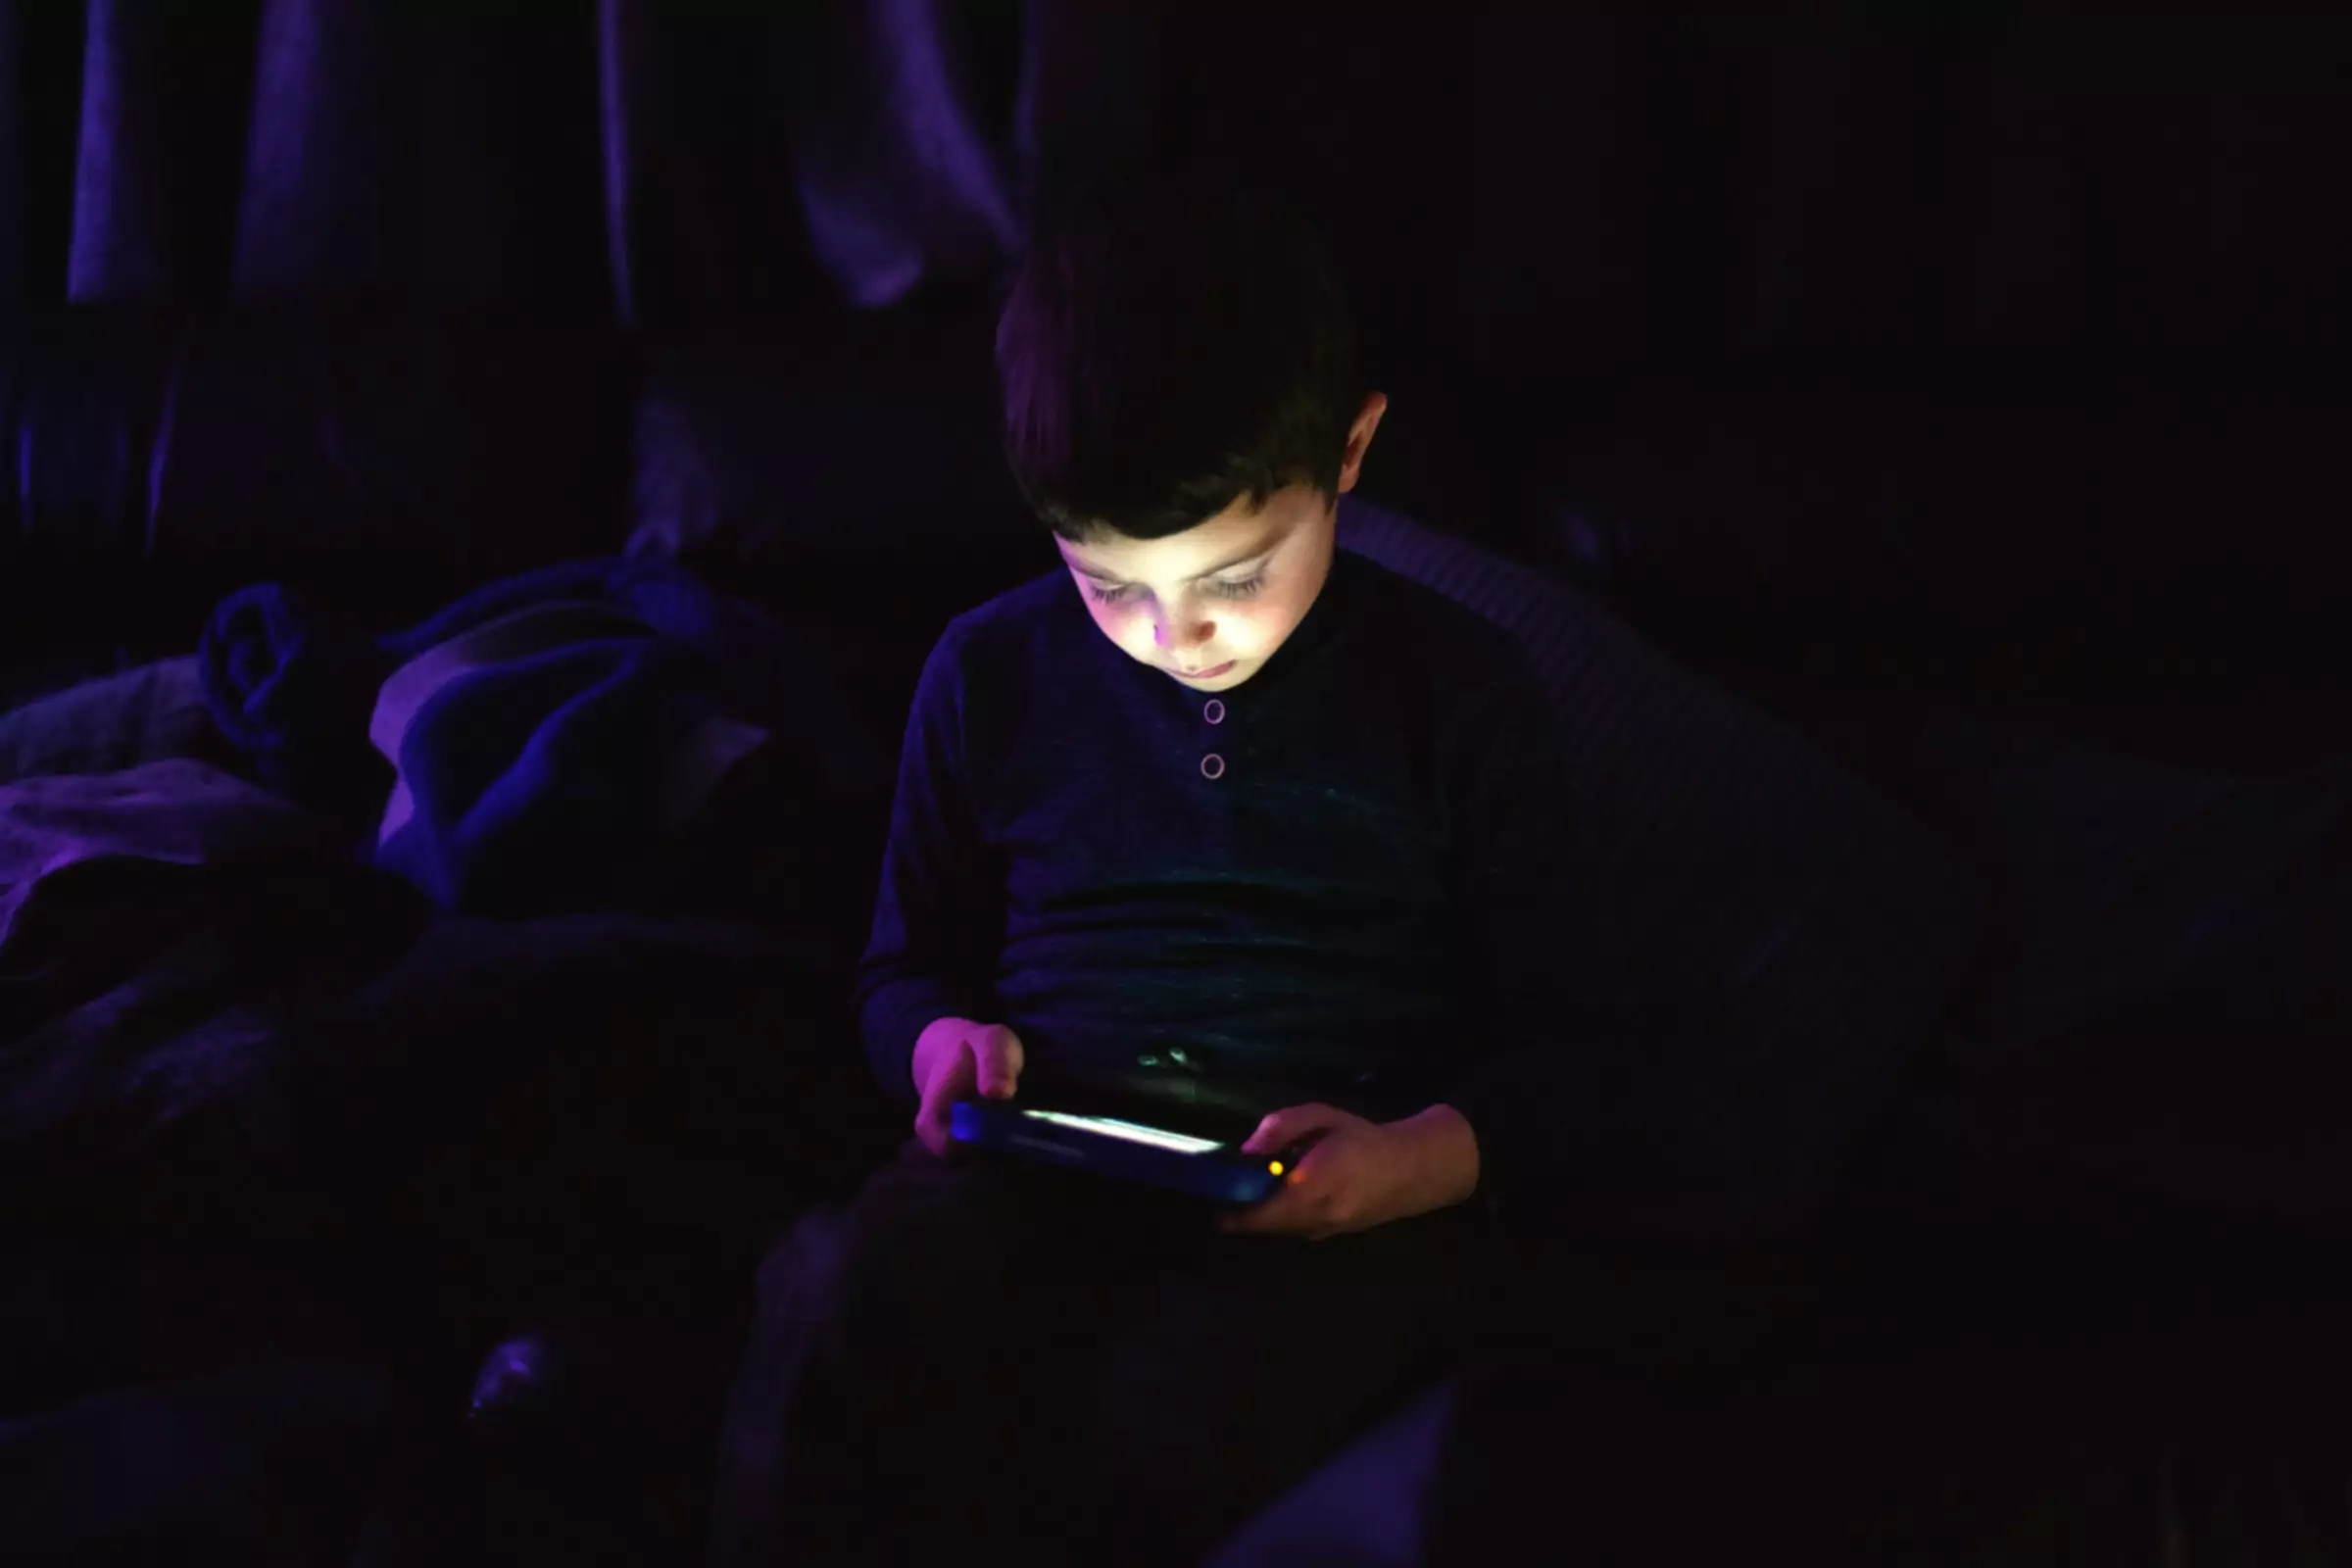 mazs bērns spēlē ar planšetdatoru tumšā telpā